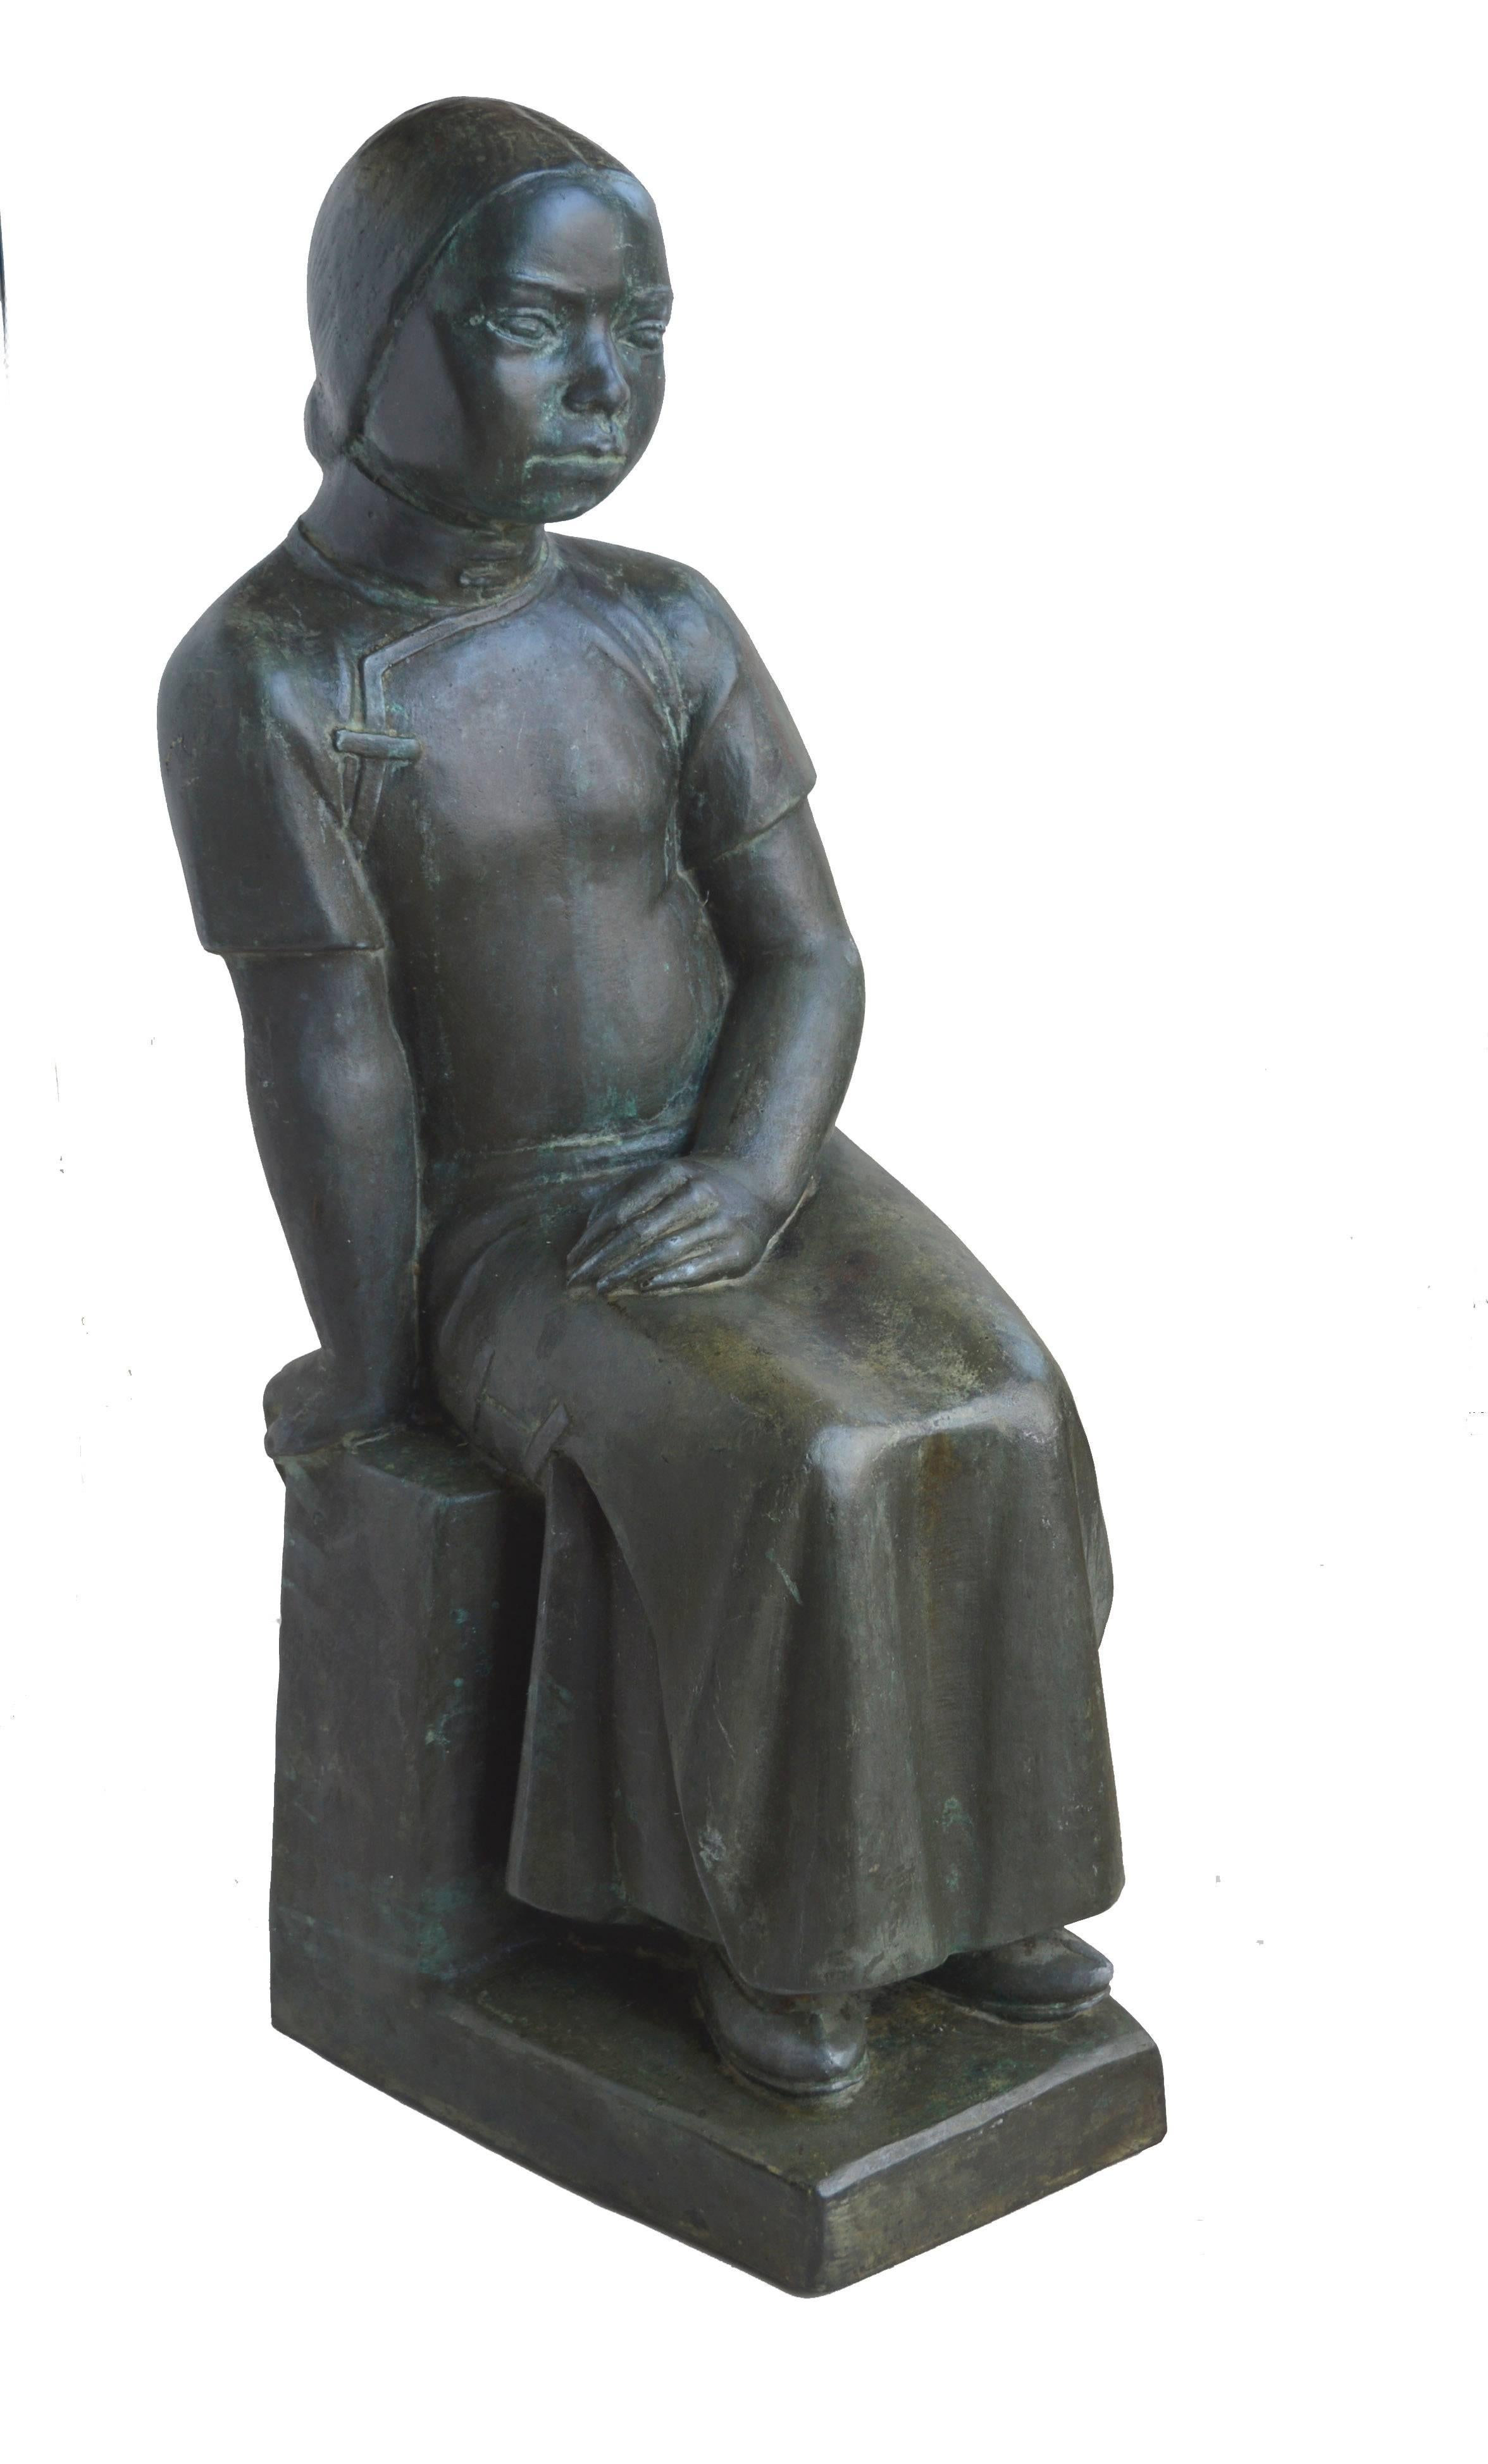 Raimondo Puccinelli Figurative Sculpture - The Girl, Chinatown, San Francisco 1940